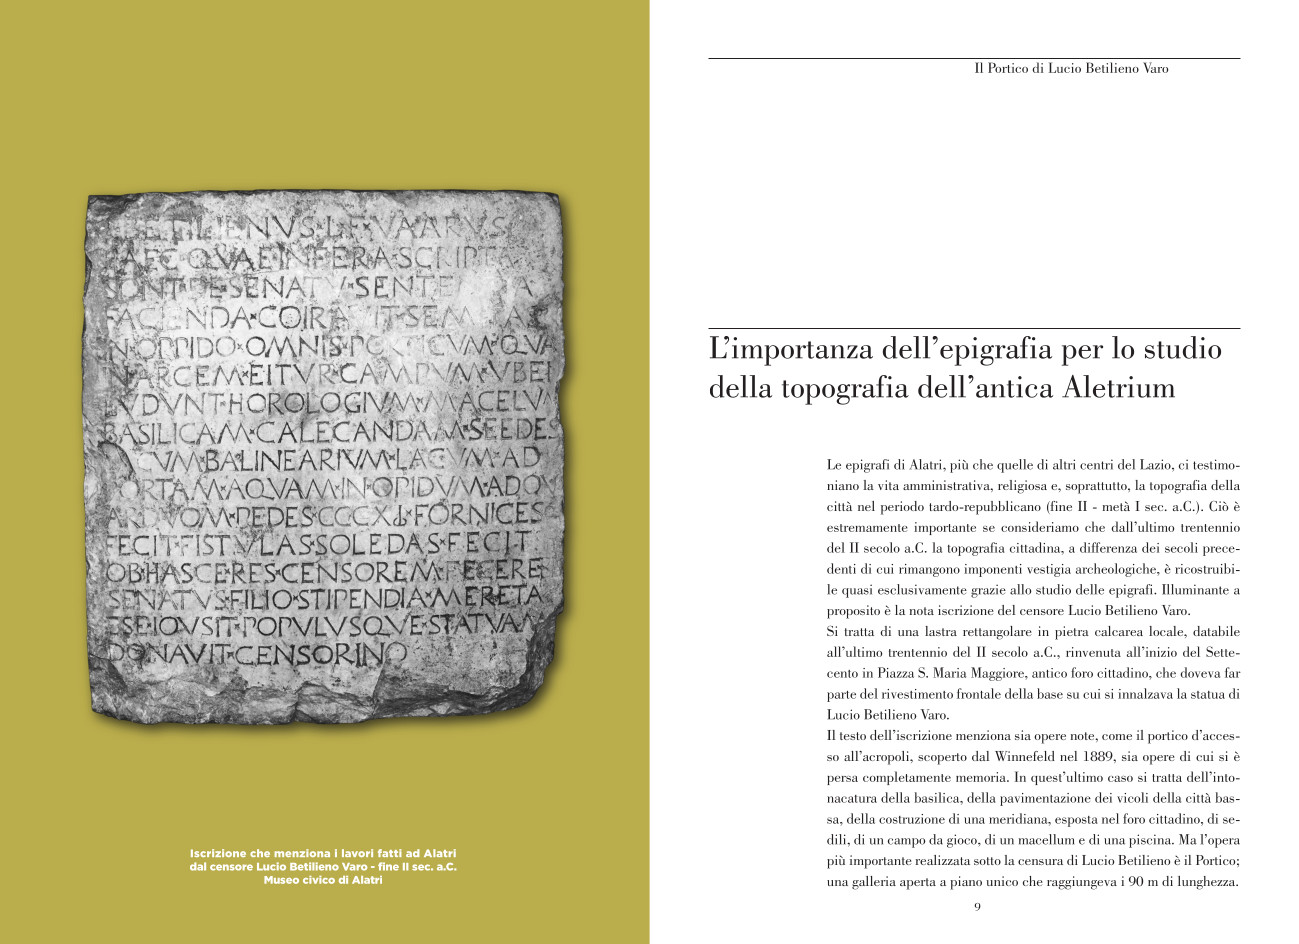 L’importanza dell’epigrafia per lo studio della topografia dell’antica Aletrium